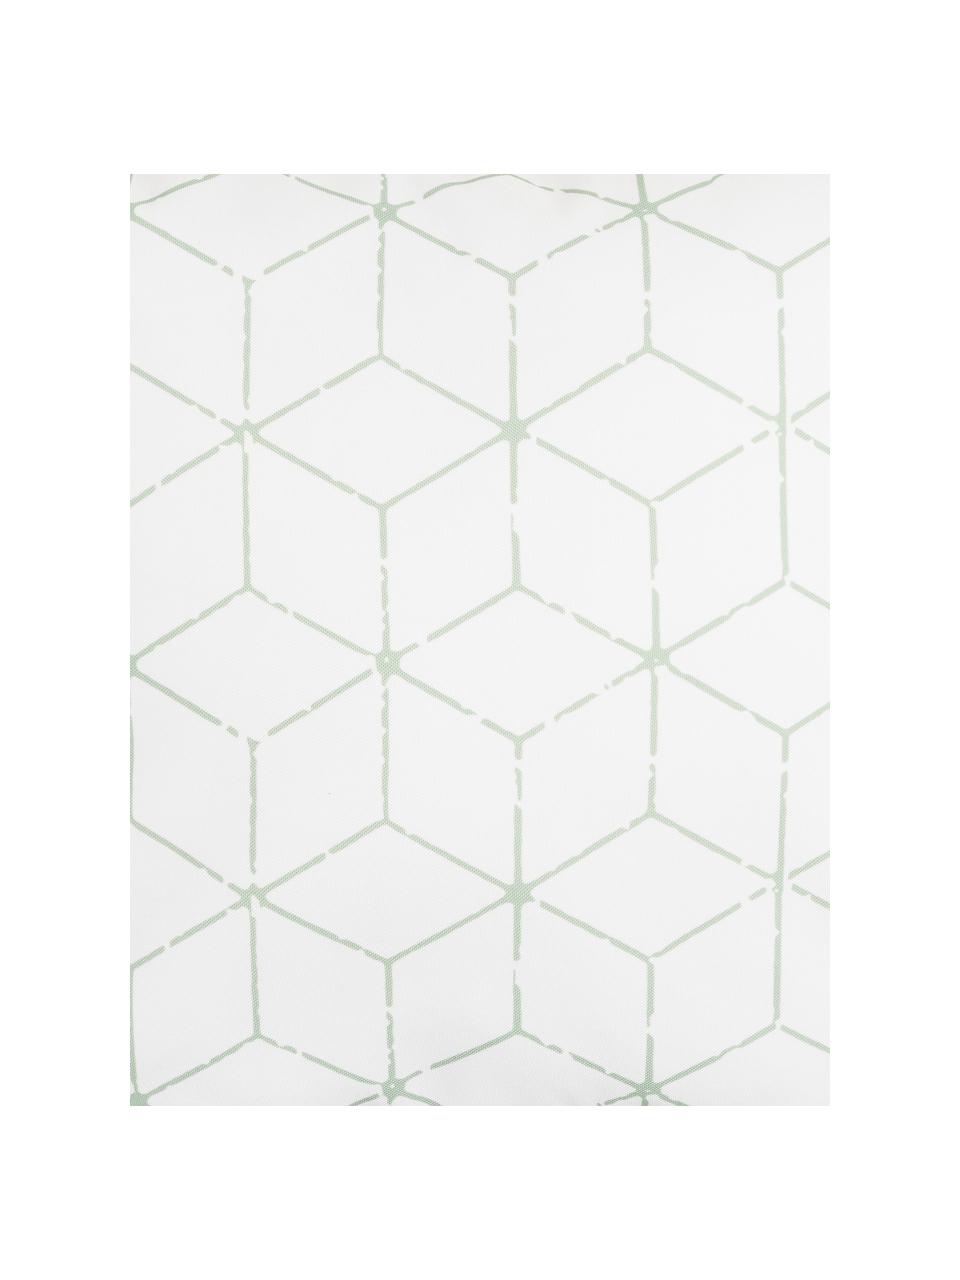 Outdoor-Kissen Cube mit grafischem Muster in Salbeigrün/Weiss, mit Inlett, 100% Polyester, Weiss, Grün, 47 x 47 cm